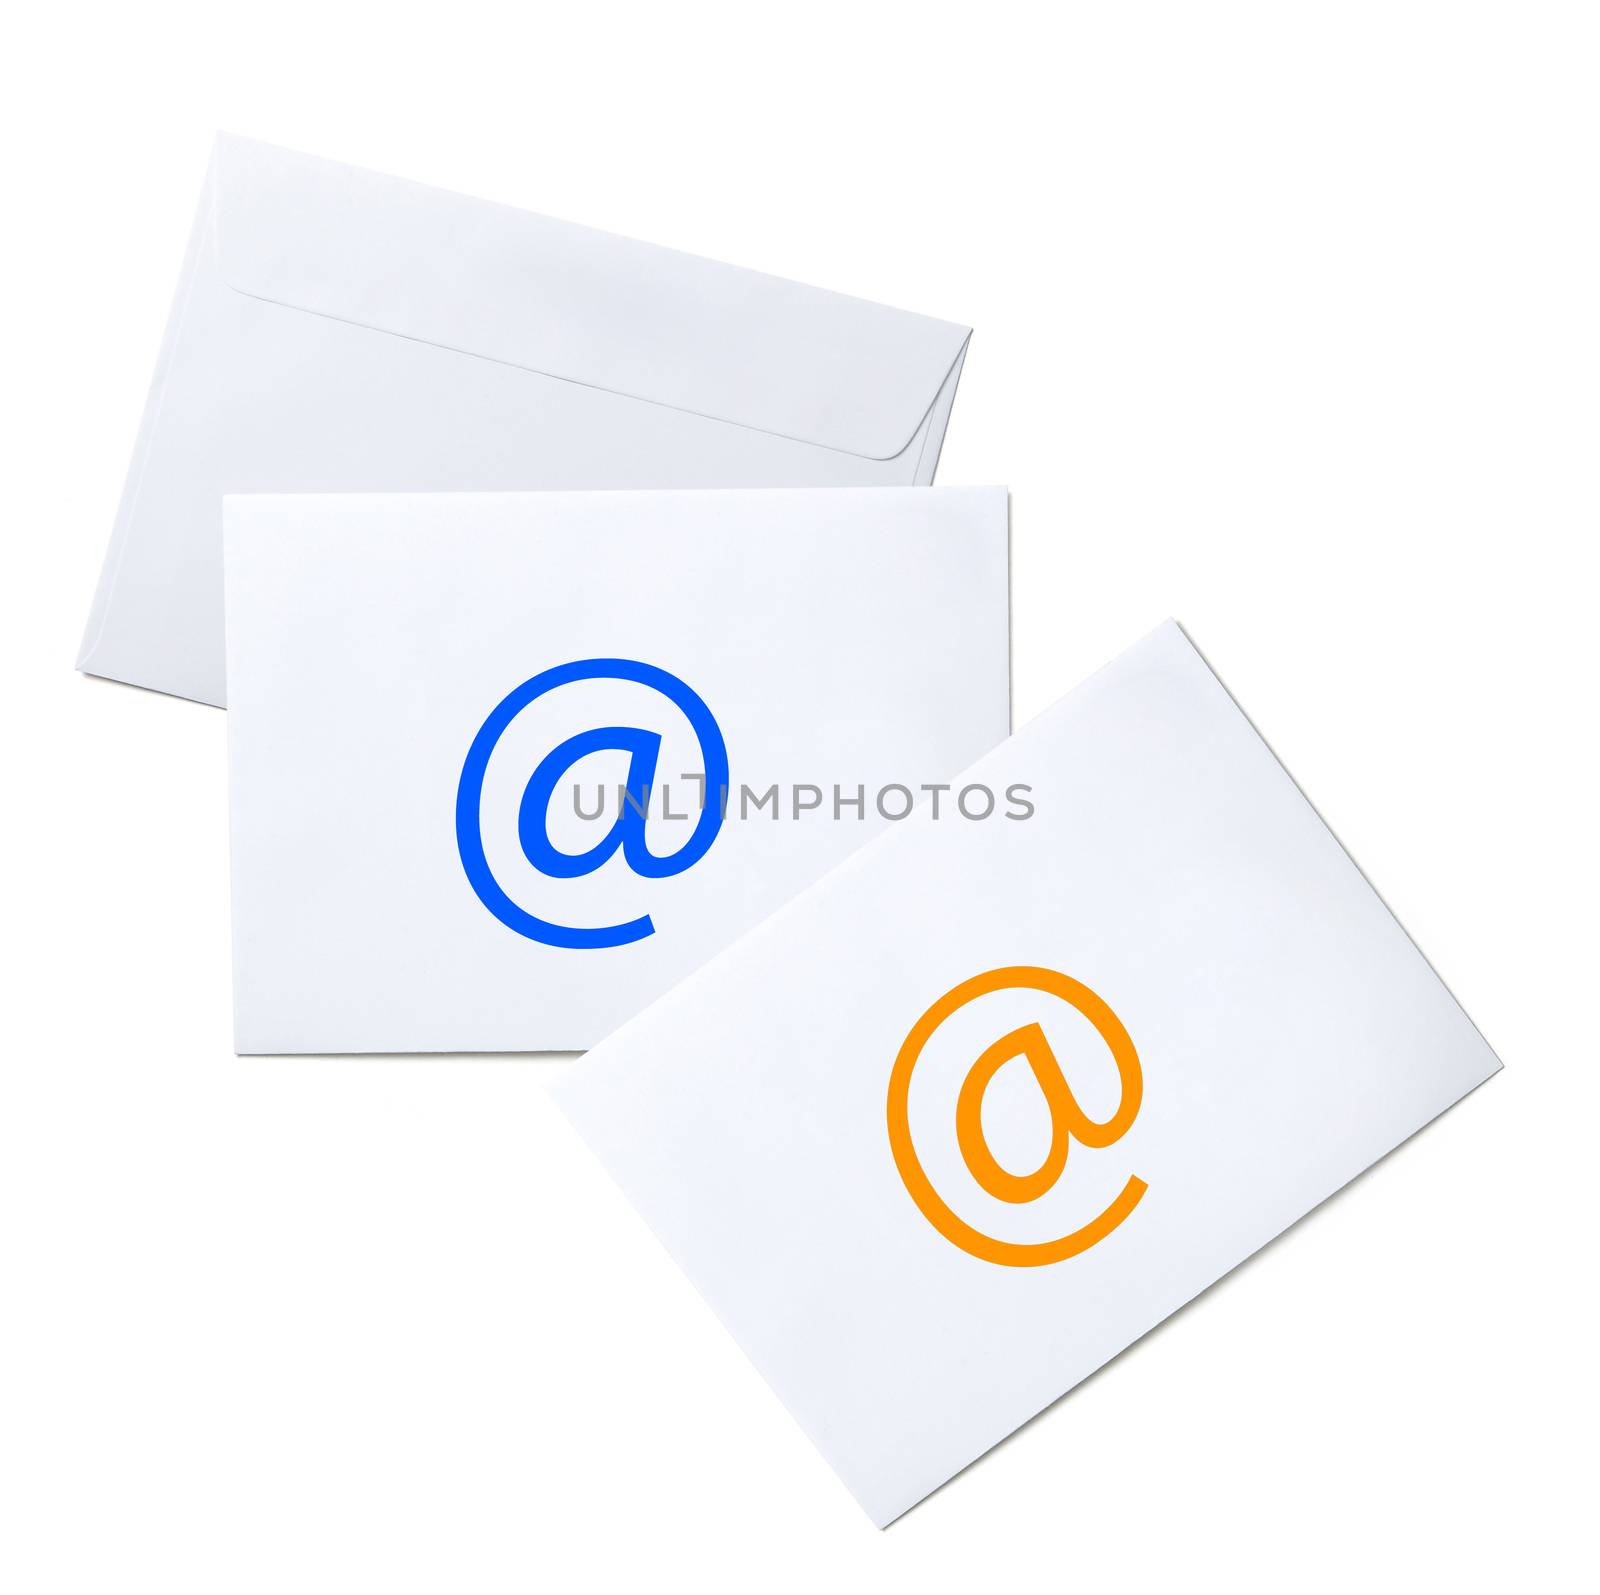 envelopes by ozaiachin